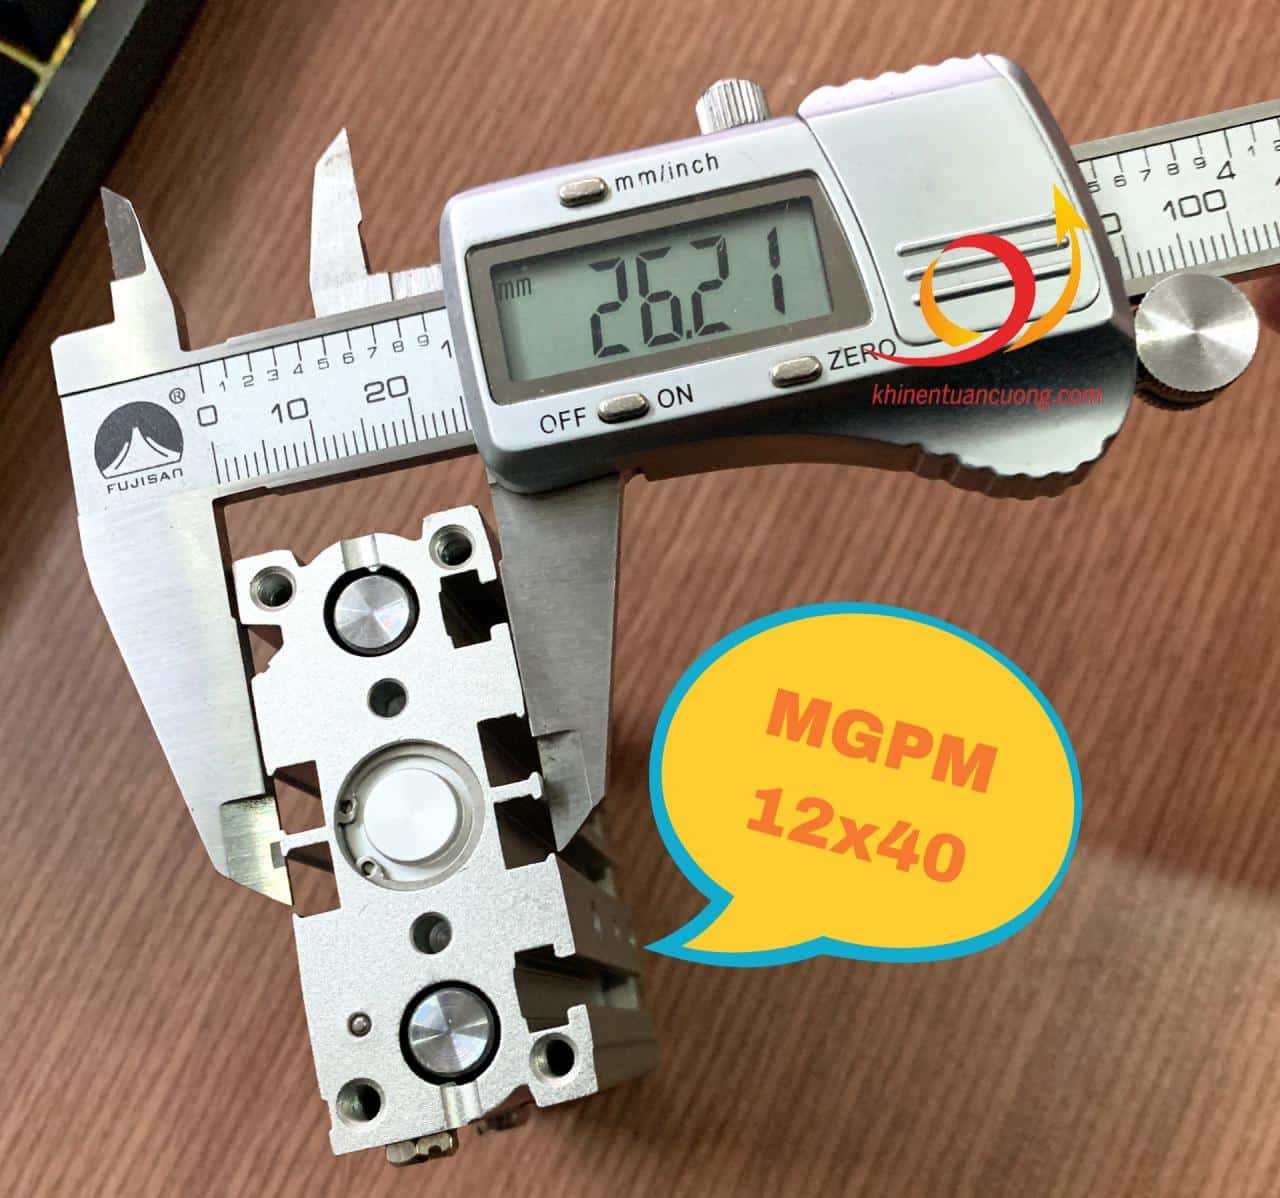 Việc đo độ dầy của xylanh MGPM12x40 không phải để xác định đường kính pít tông, mà chỉ là 1 bước nhỏ trong đó thôi